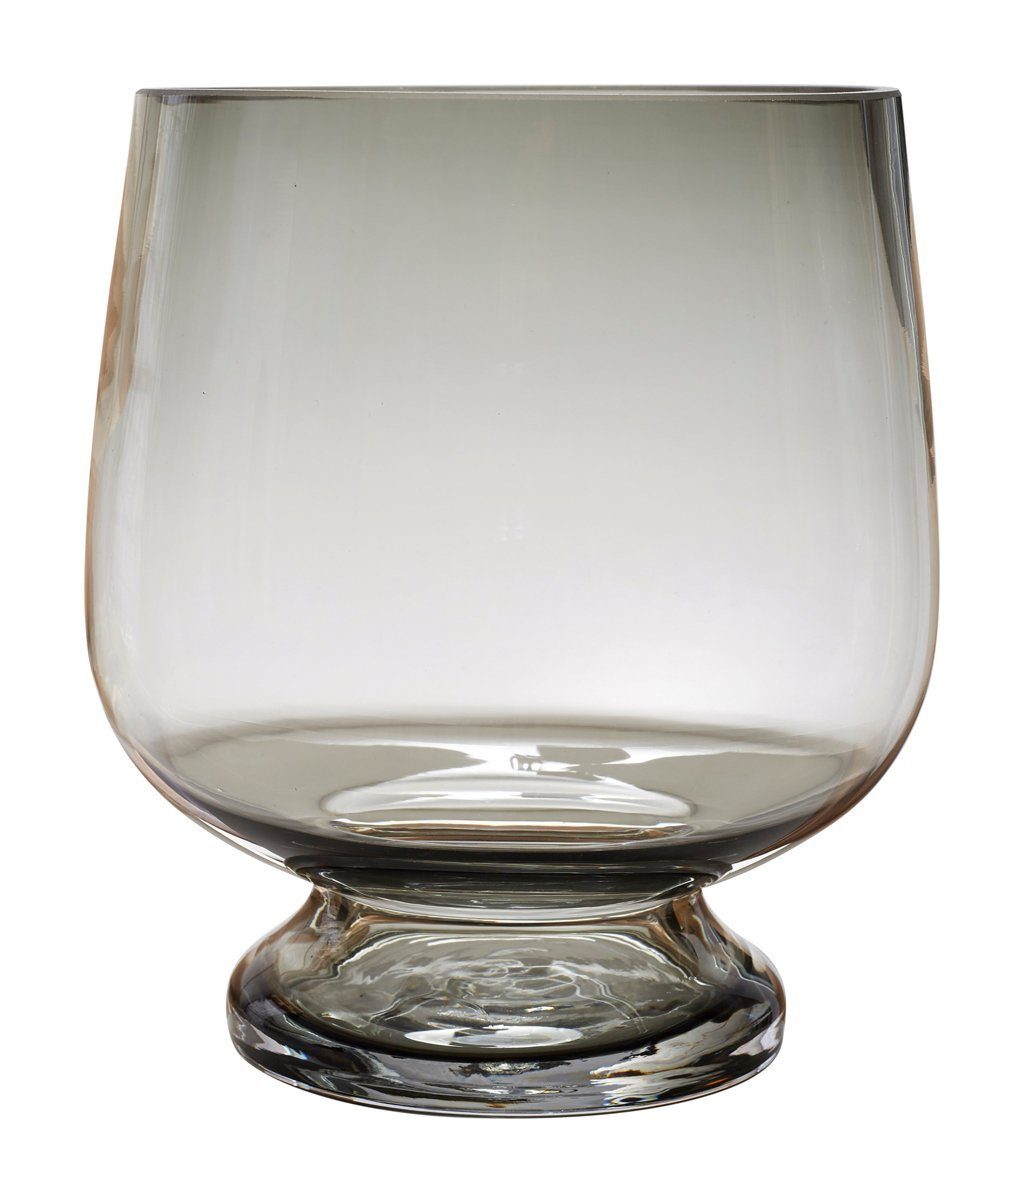 Rudolph Keramik Windlicht Windlichtglas "Hanami" mit Fuß, Ø 18cm, H 20cm, rauchgrau (1 St), Schweres, dickes Glas